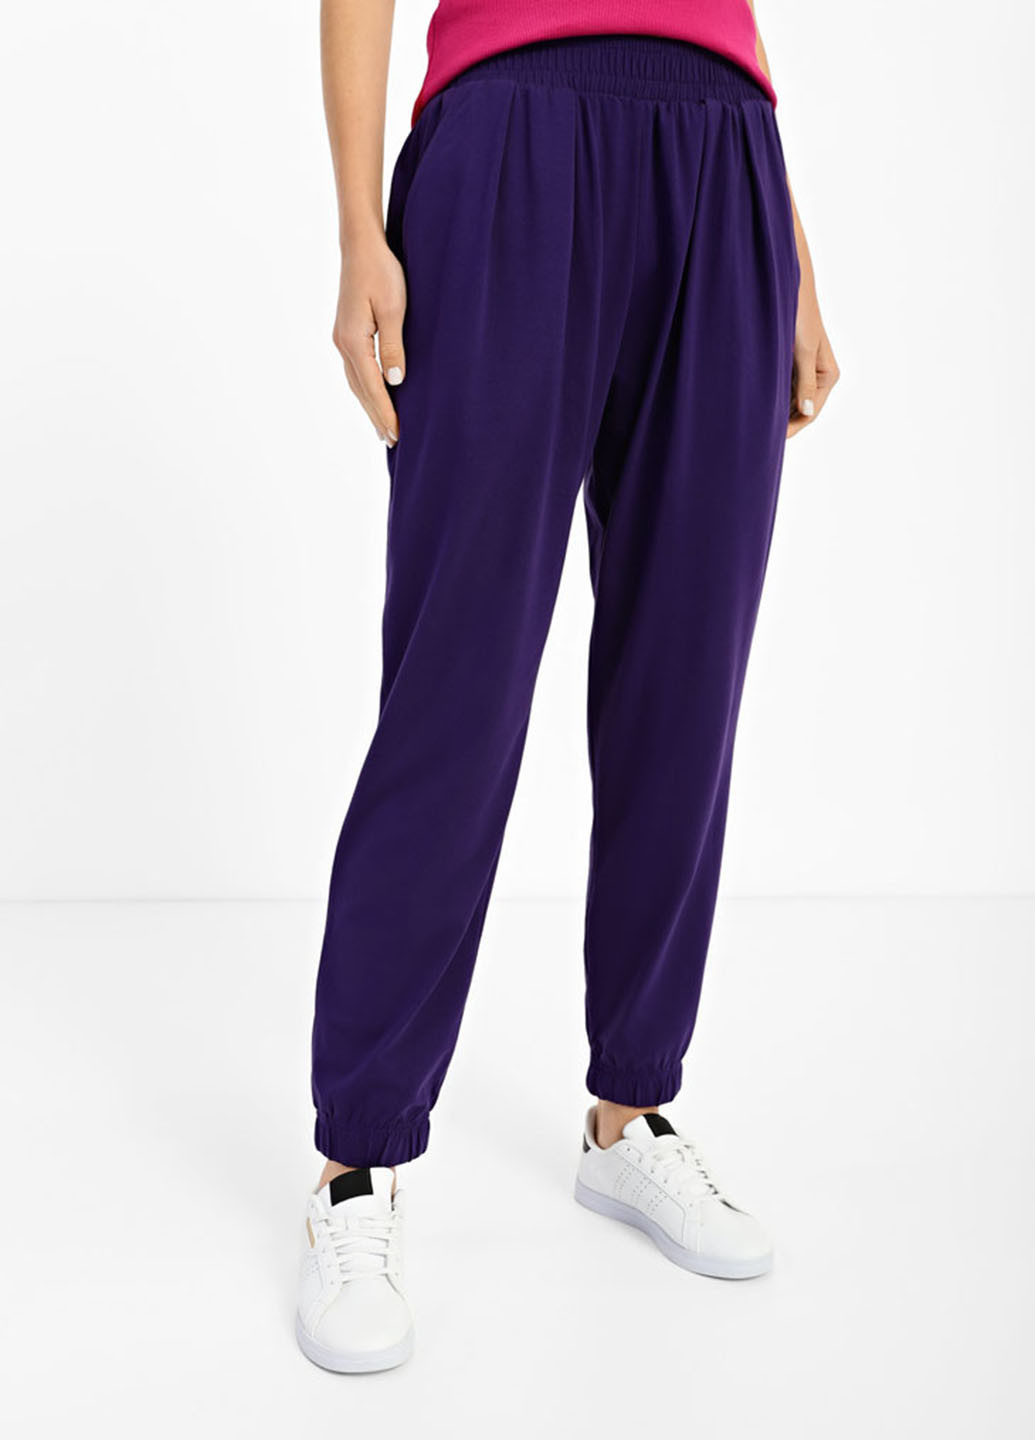 Фиолетовые кэжуал летние джоггеры брюки Promin